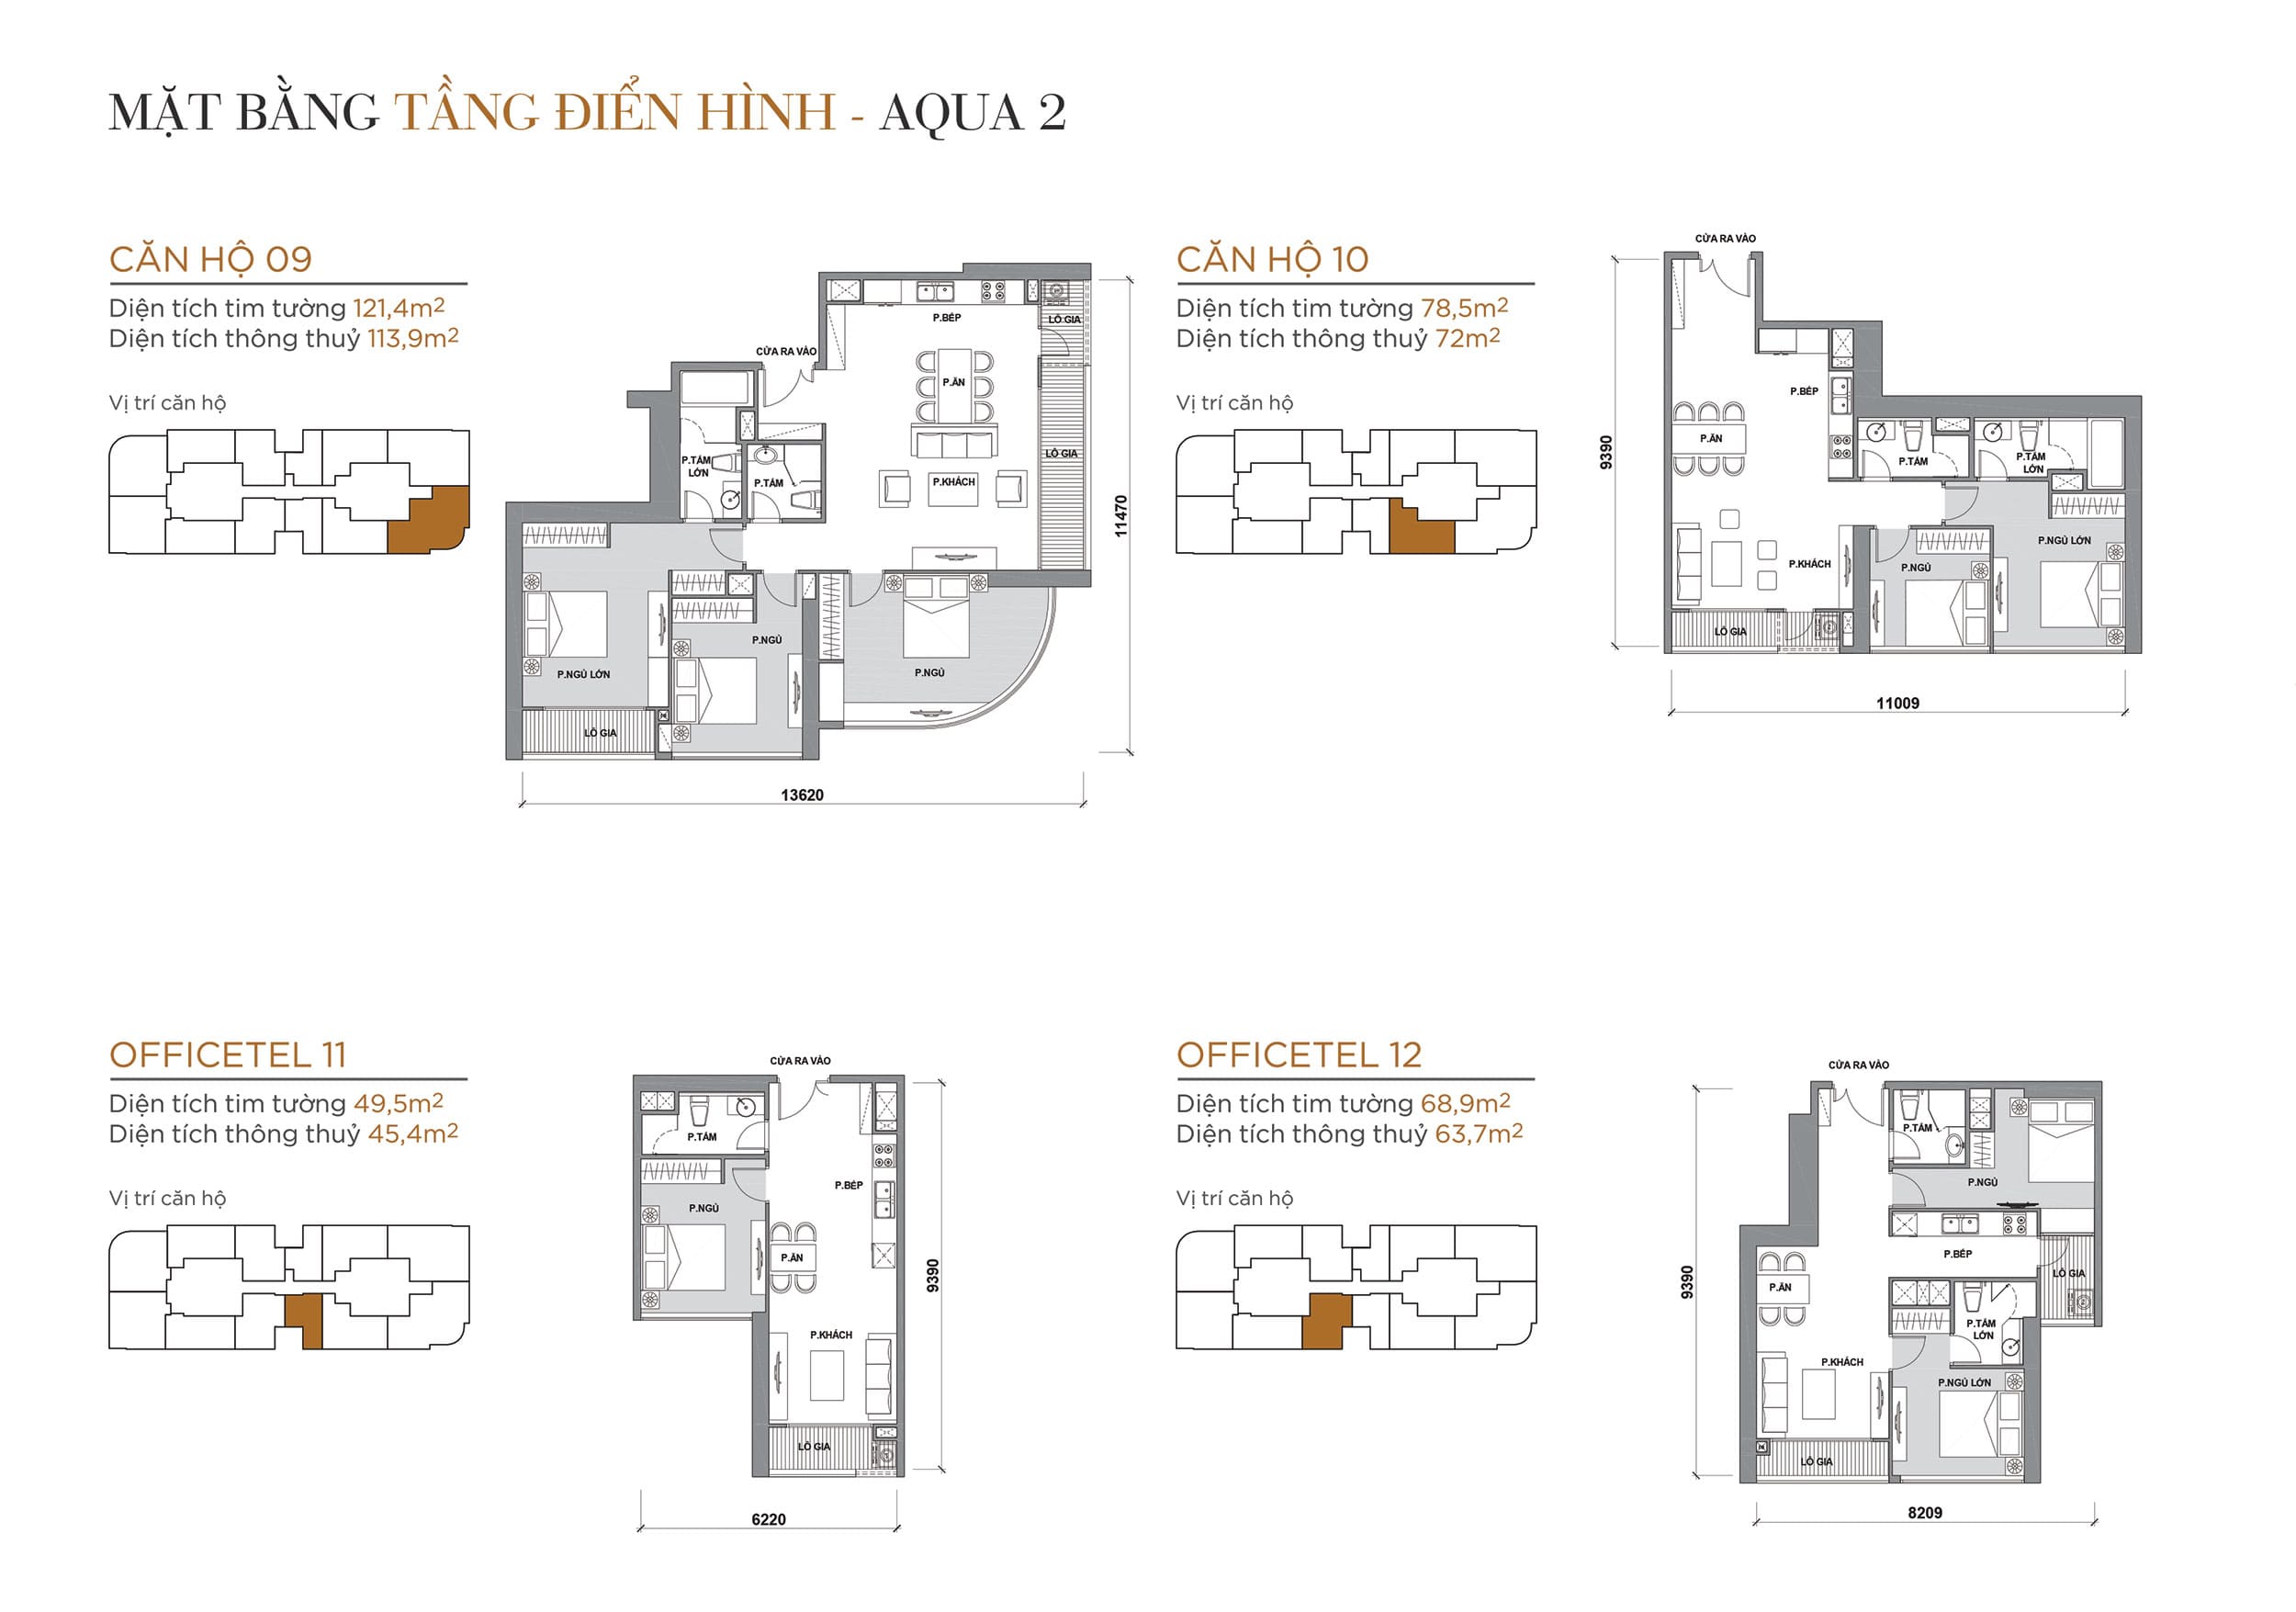 Layout thiết kế tầng điển hình Tòa Aqua 2 loại Căn hộ 09, Căn hộ 10, Officetel 11, Officetel 12.